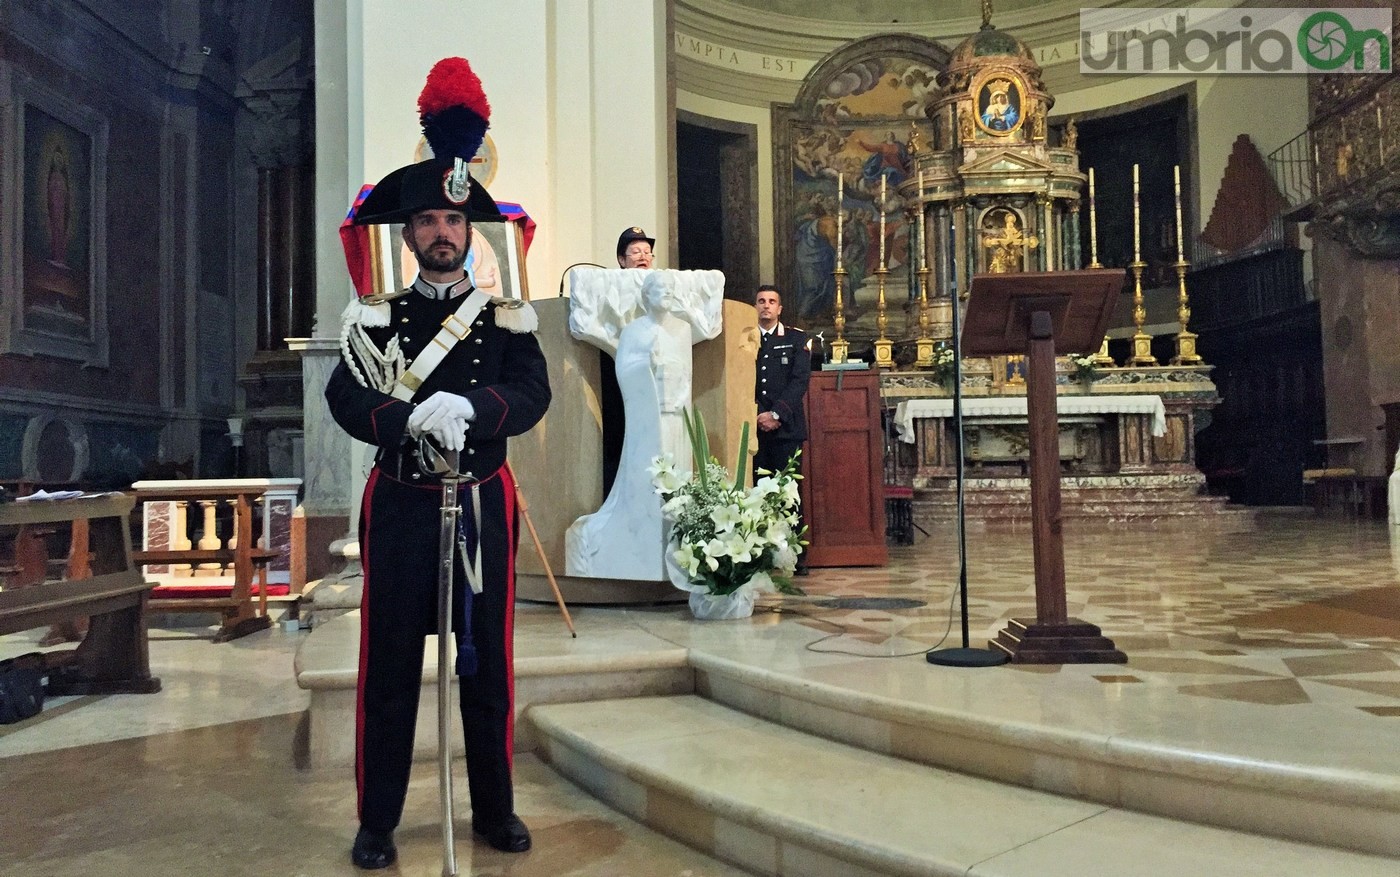 Virgo-Fidelis-carabinieri-Terni-in-cattedrale-21-novembre-2016-7